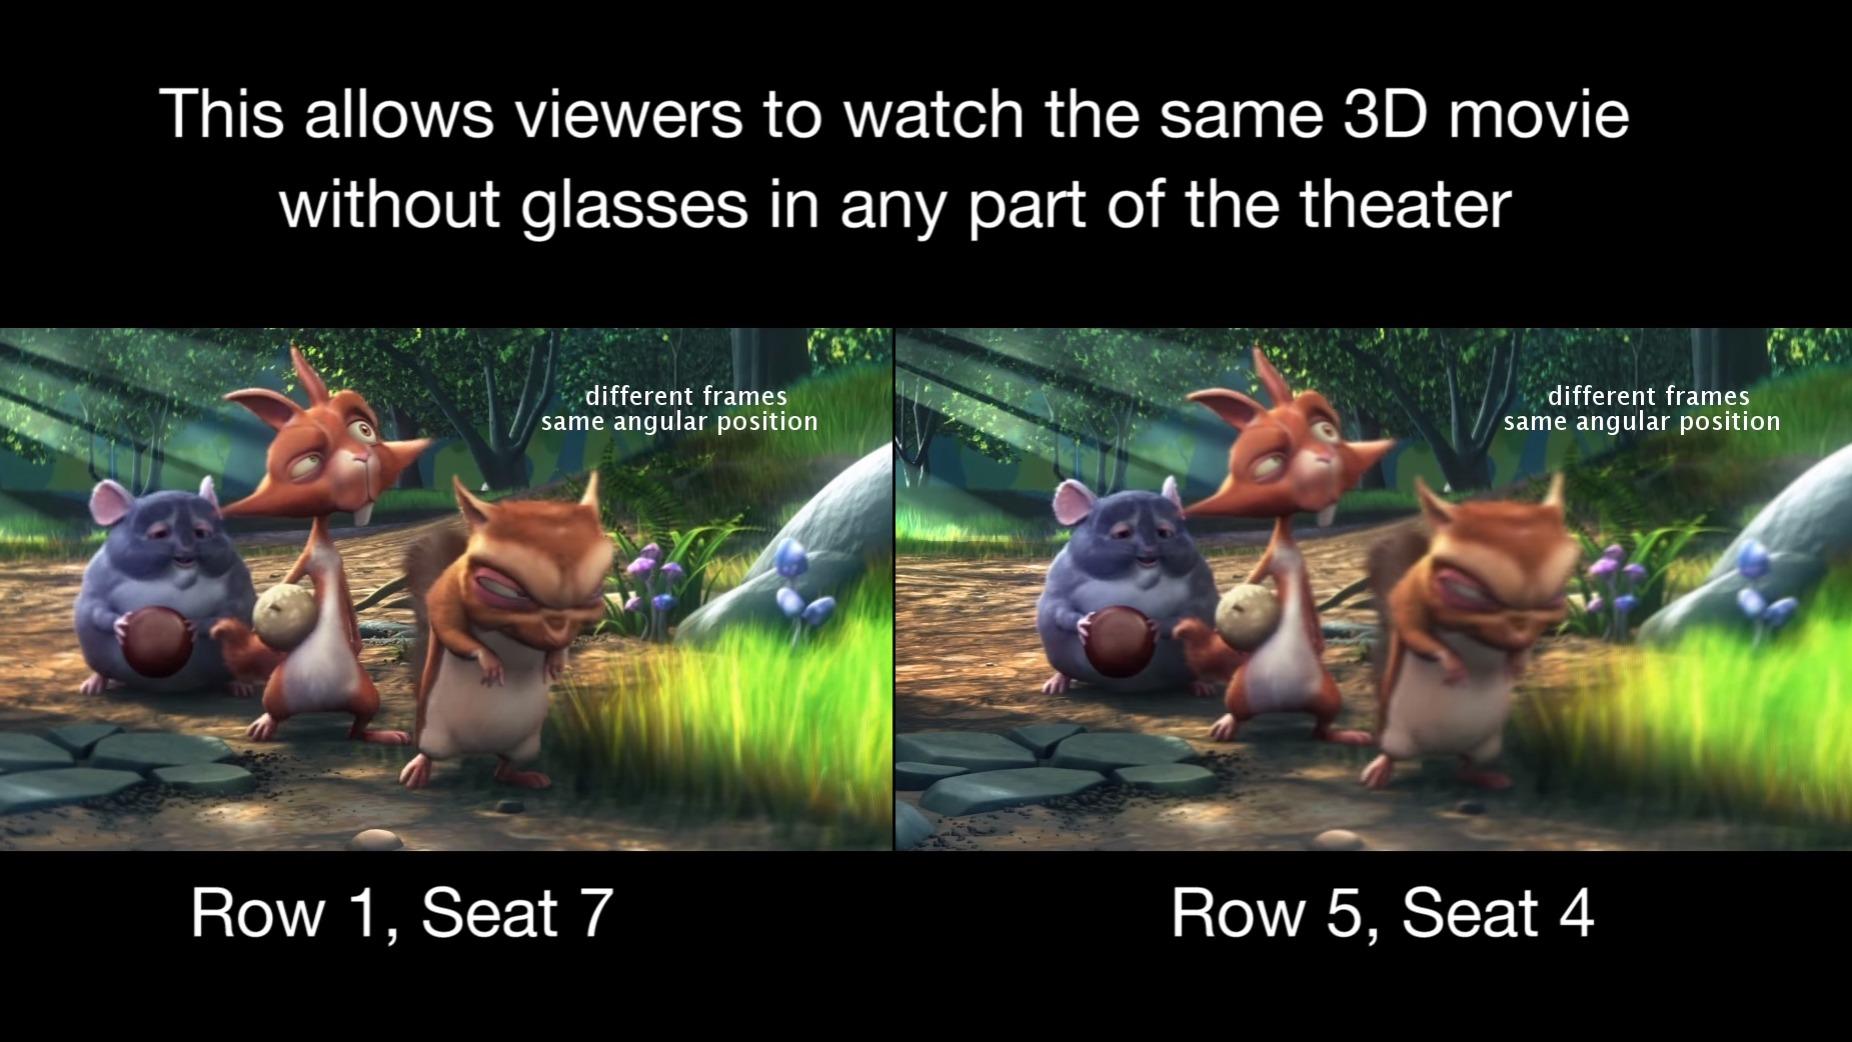 swear questionnaire Nod Ny teknologi gjør det mulig å se 3D-filmer på kino uten briller - Tek.no